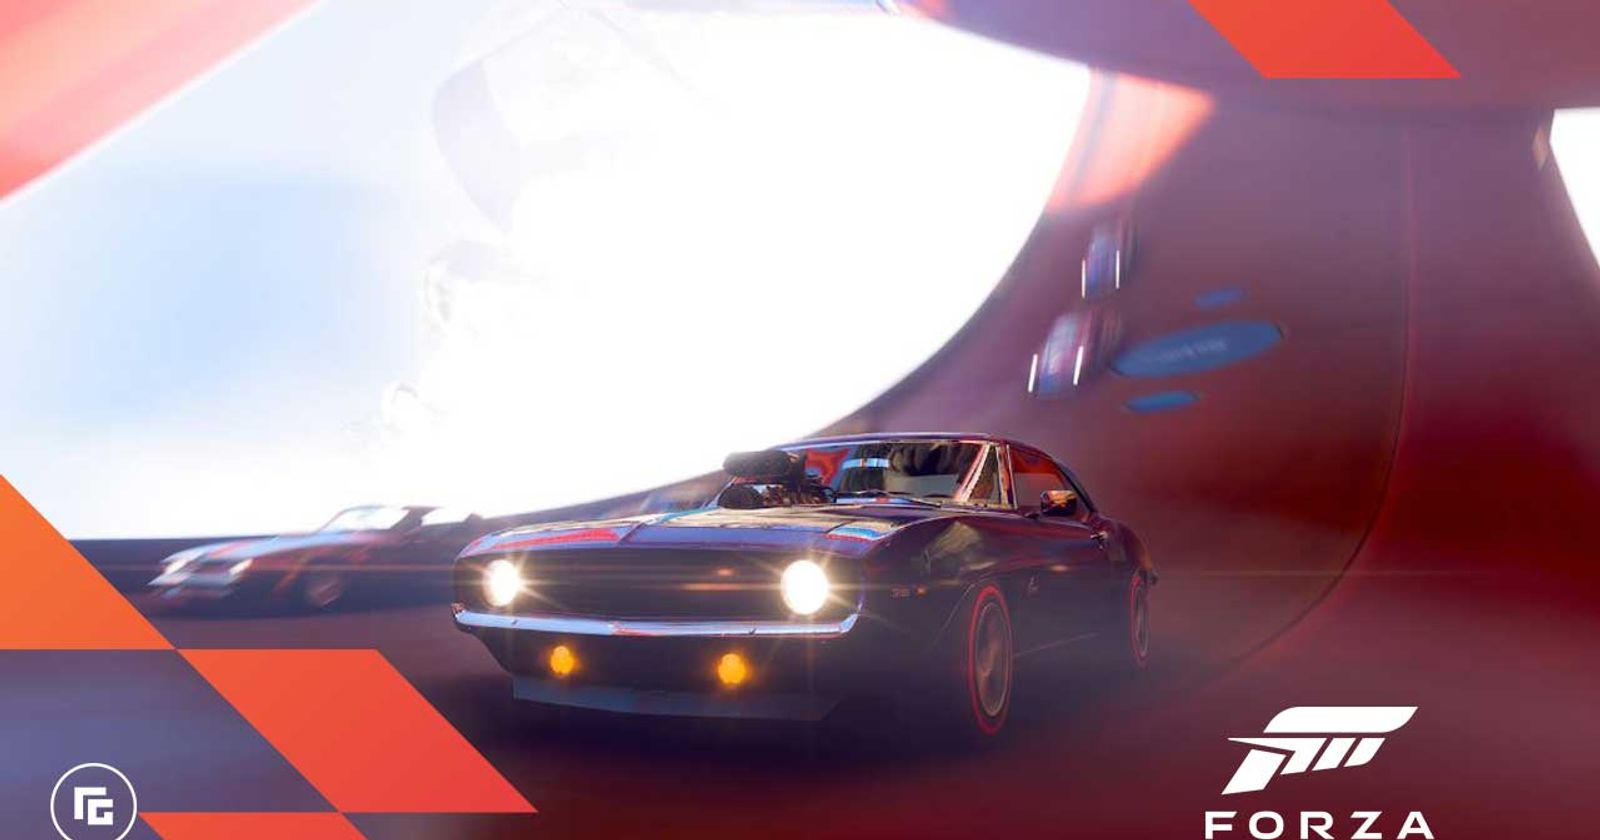 Forza Horizon 5 DLC 'Hot Wheels' launches July 19 - Gematsu